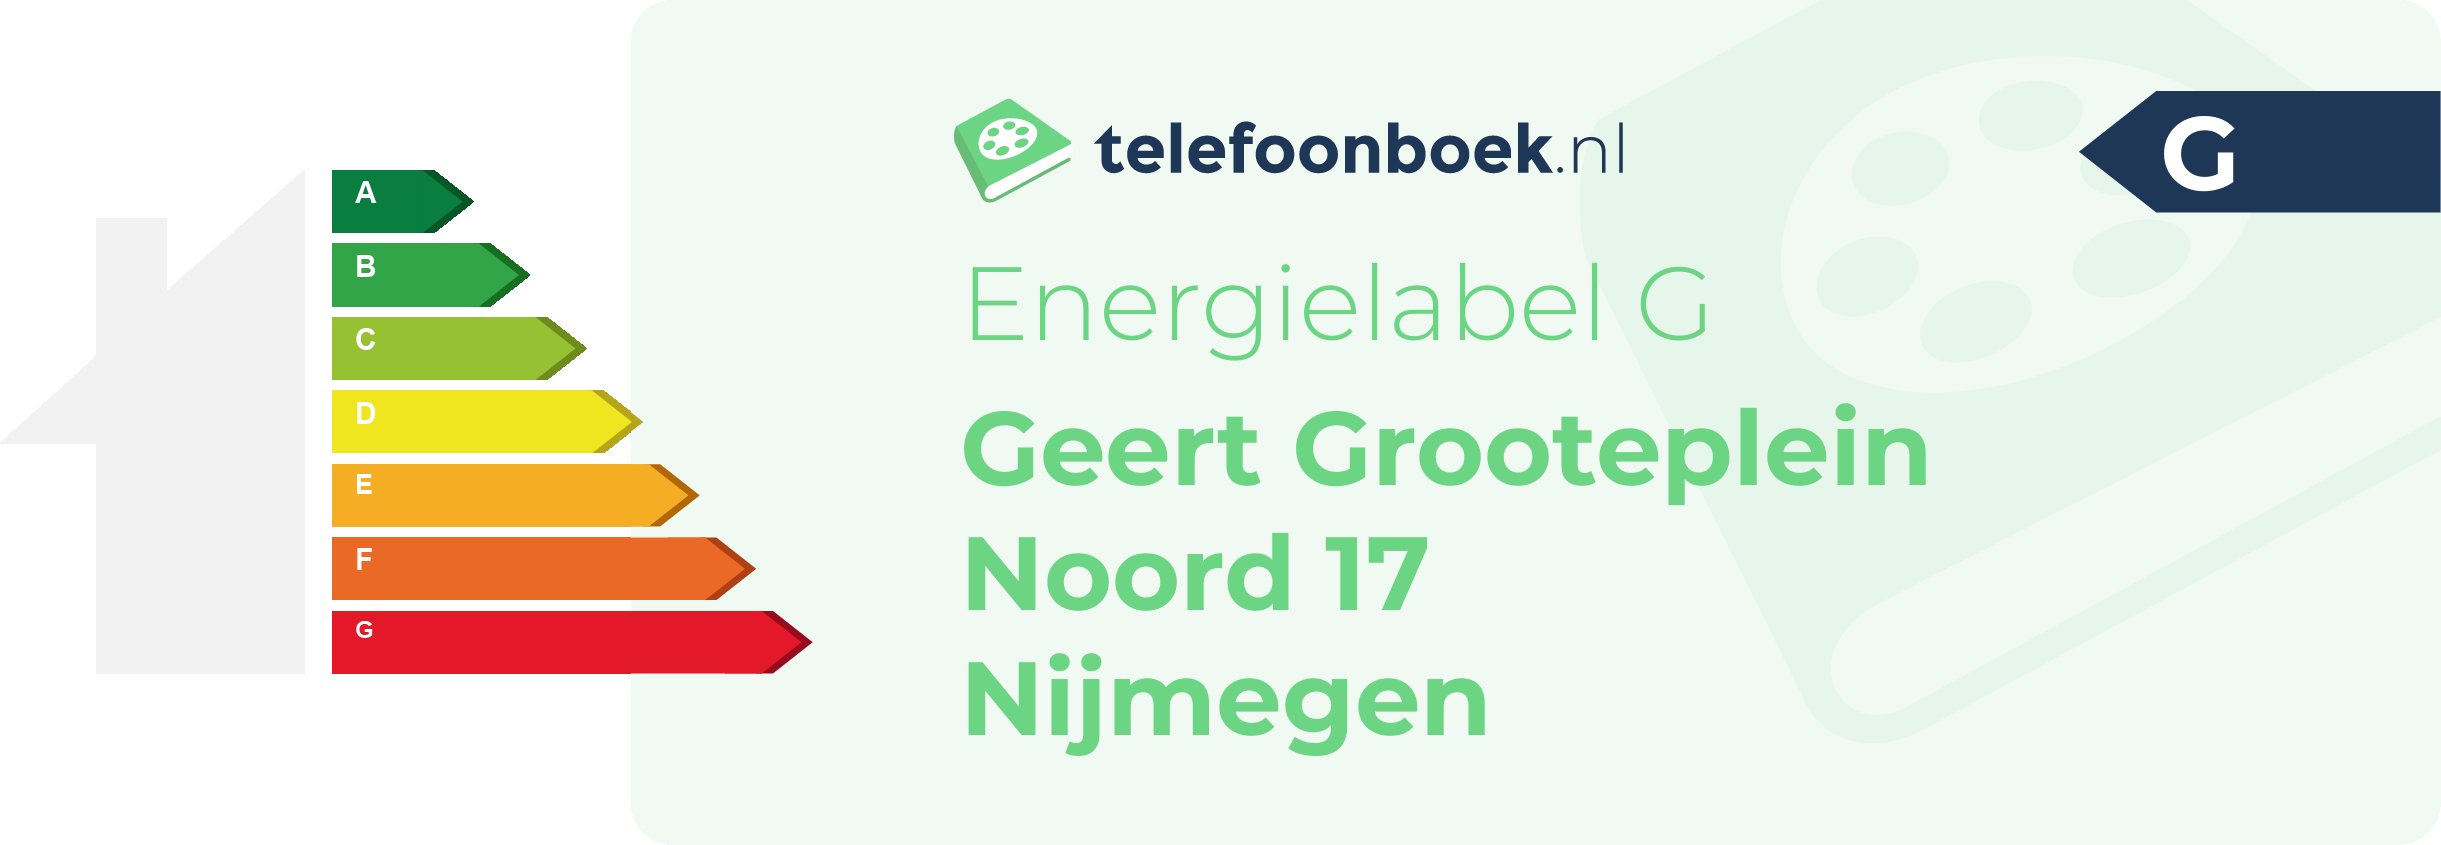 Energielabel Geert Grooteplein Noord 17 Nijmegen